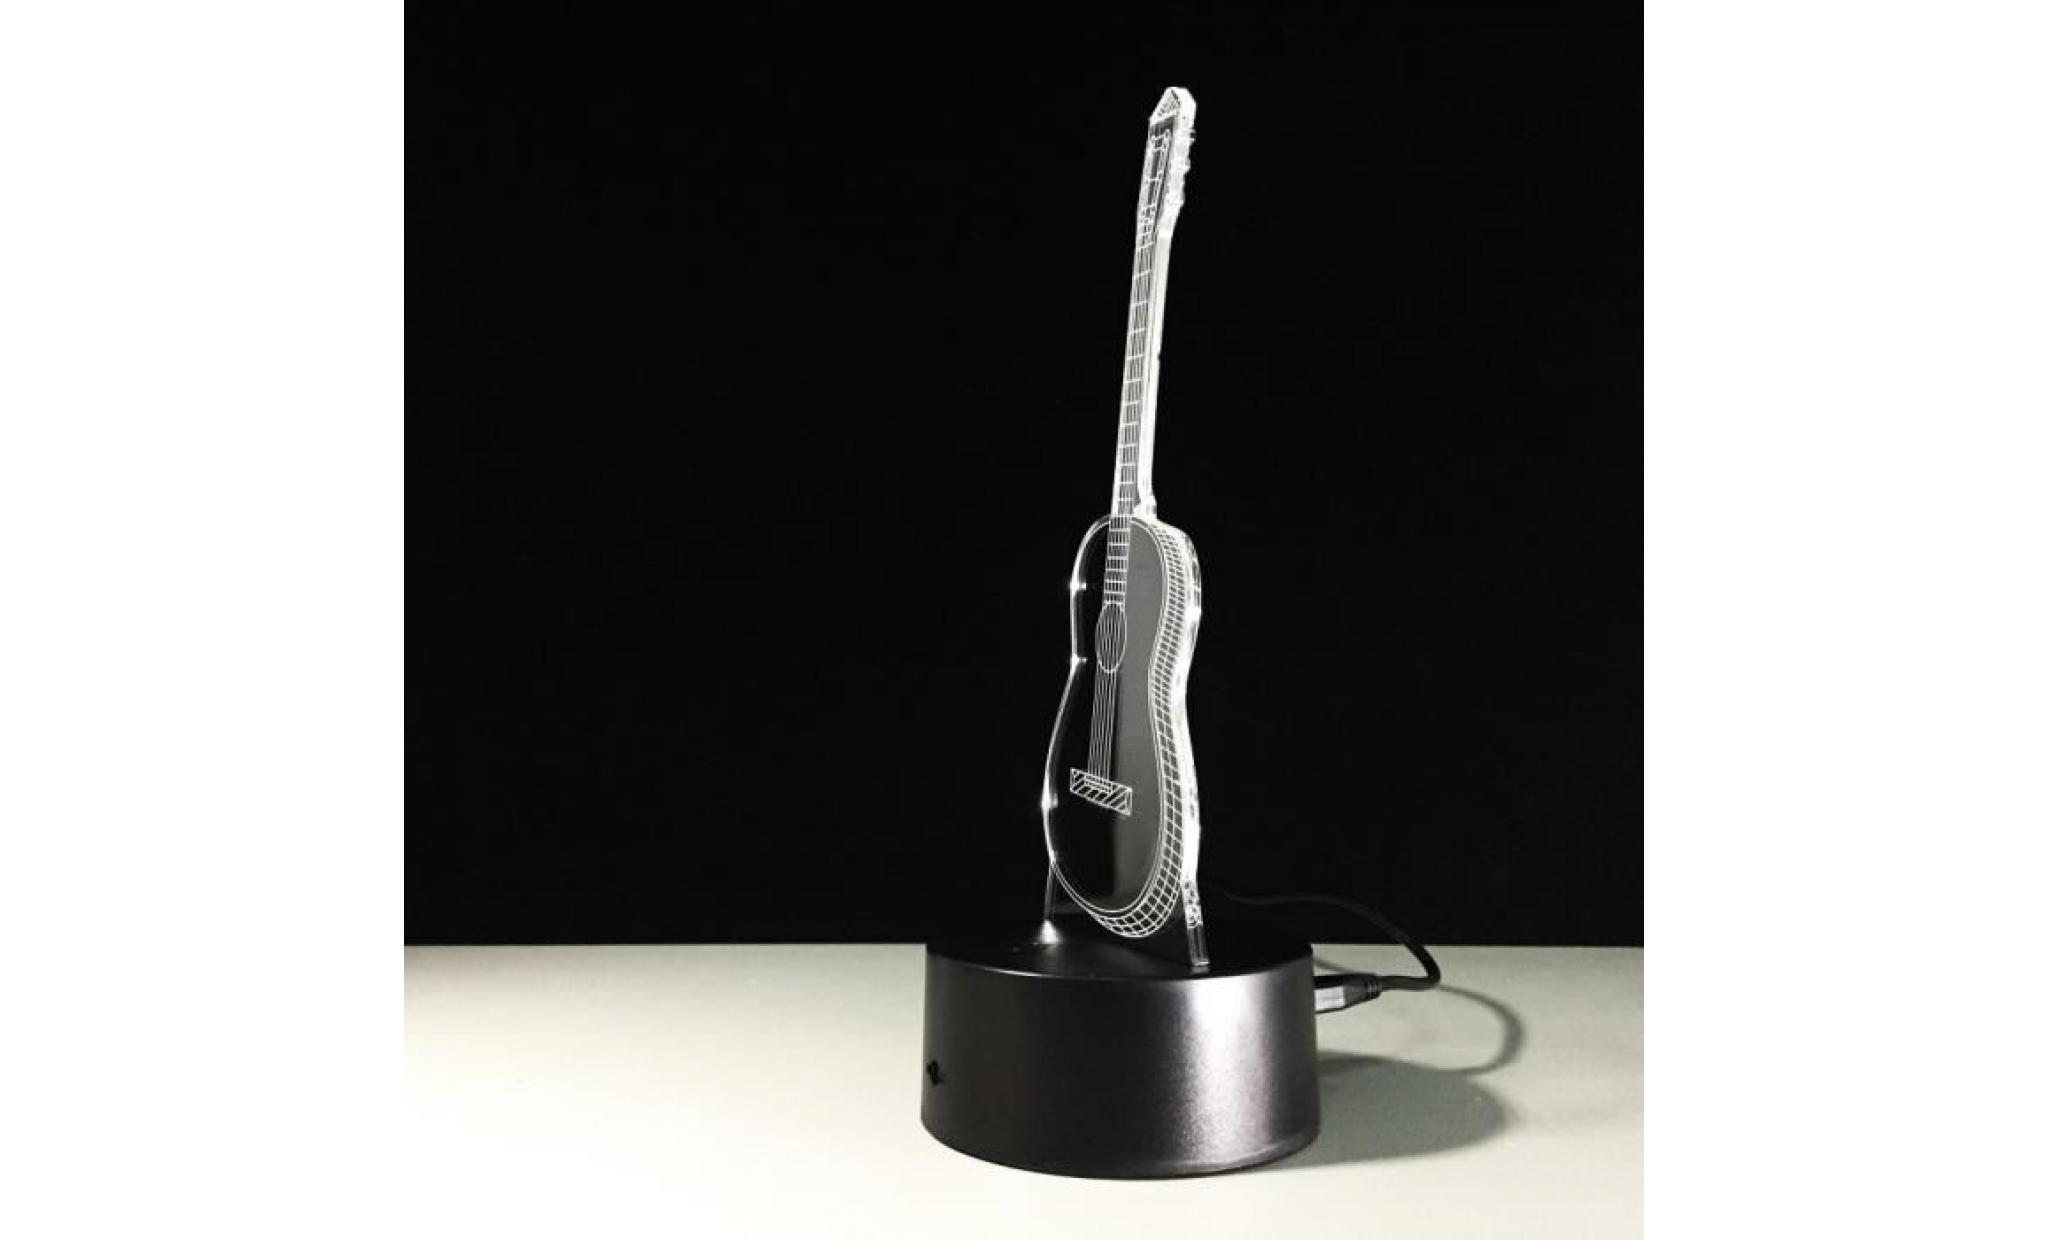 led guitar ukulele 3d night light 7 couleurs table lampe de bureau à touche cadeau de noël ond4668 pas cher